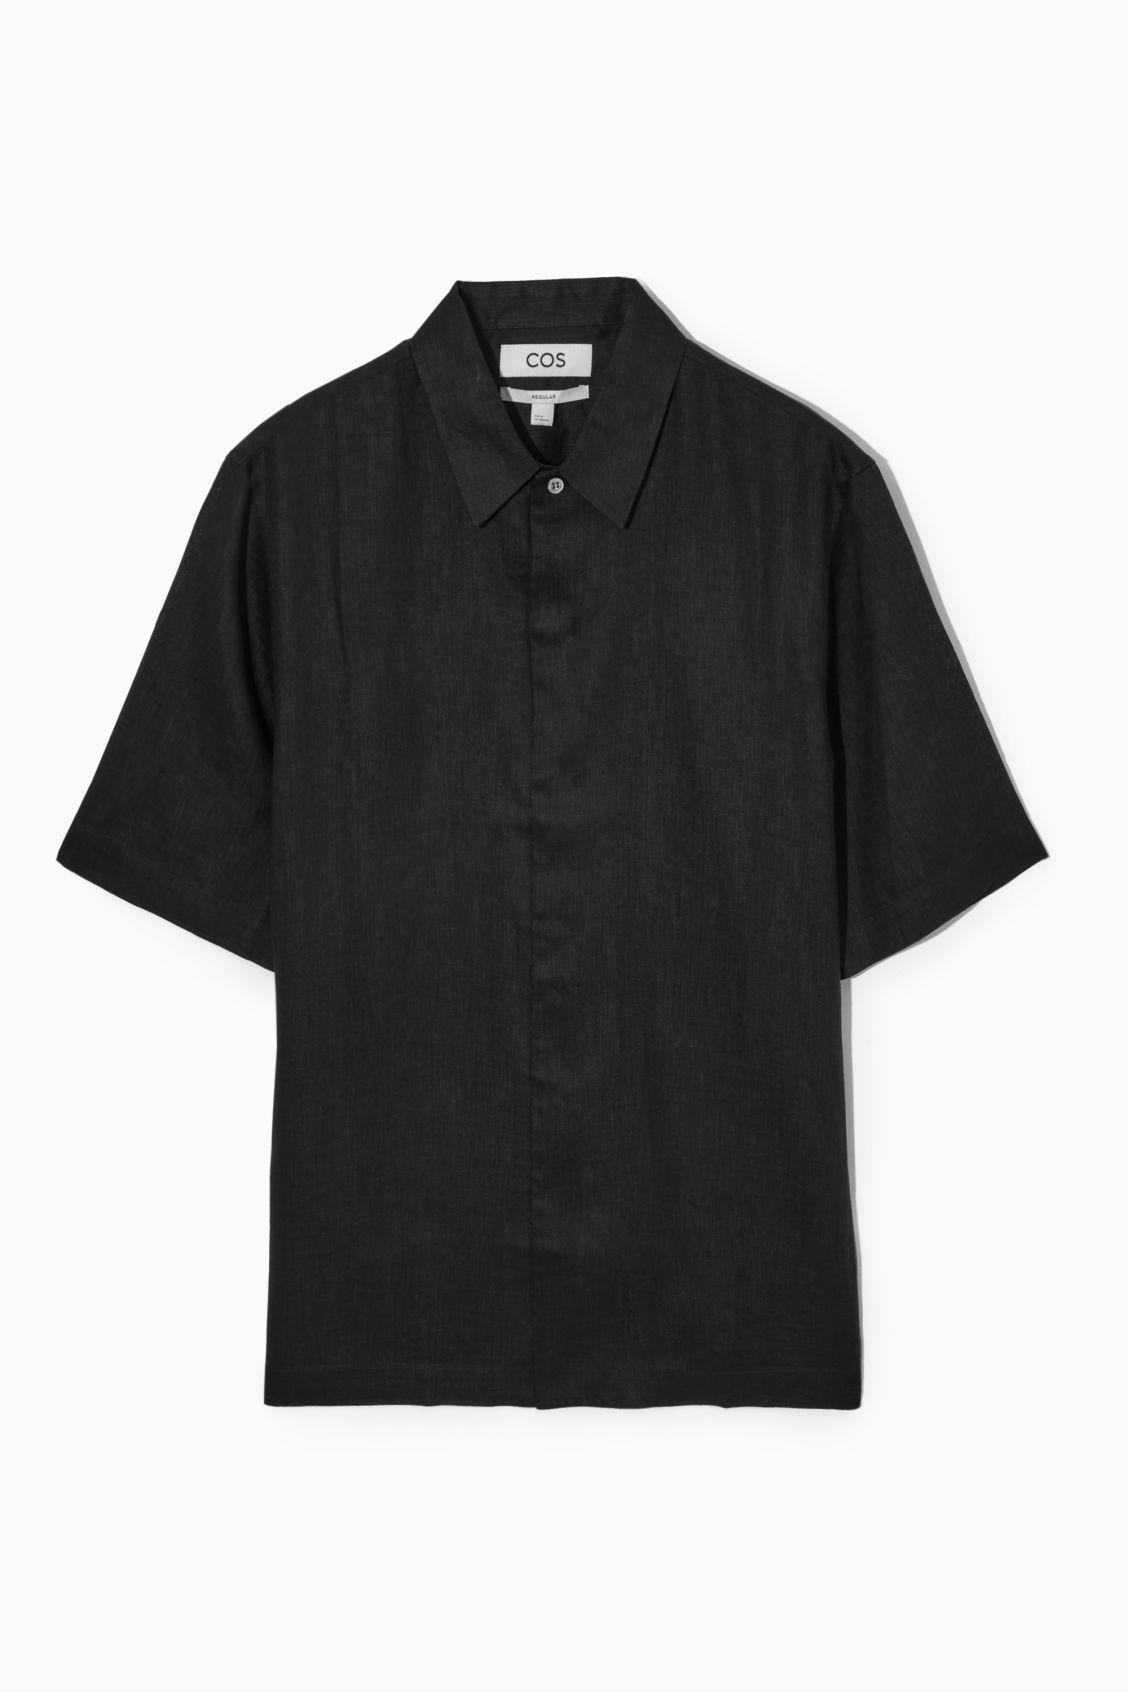 COS Short-sleeved Linen Shirt in Black for Men | Lyst